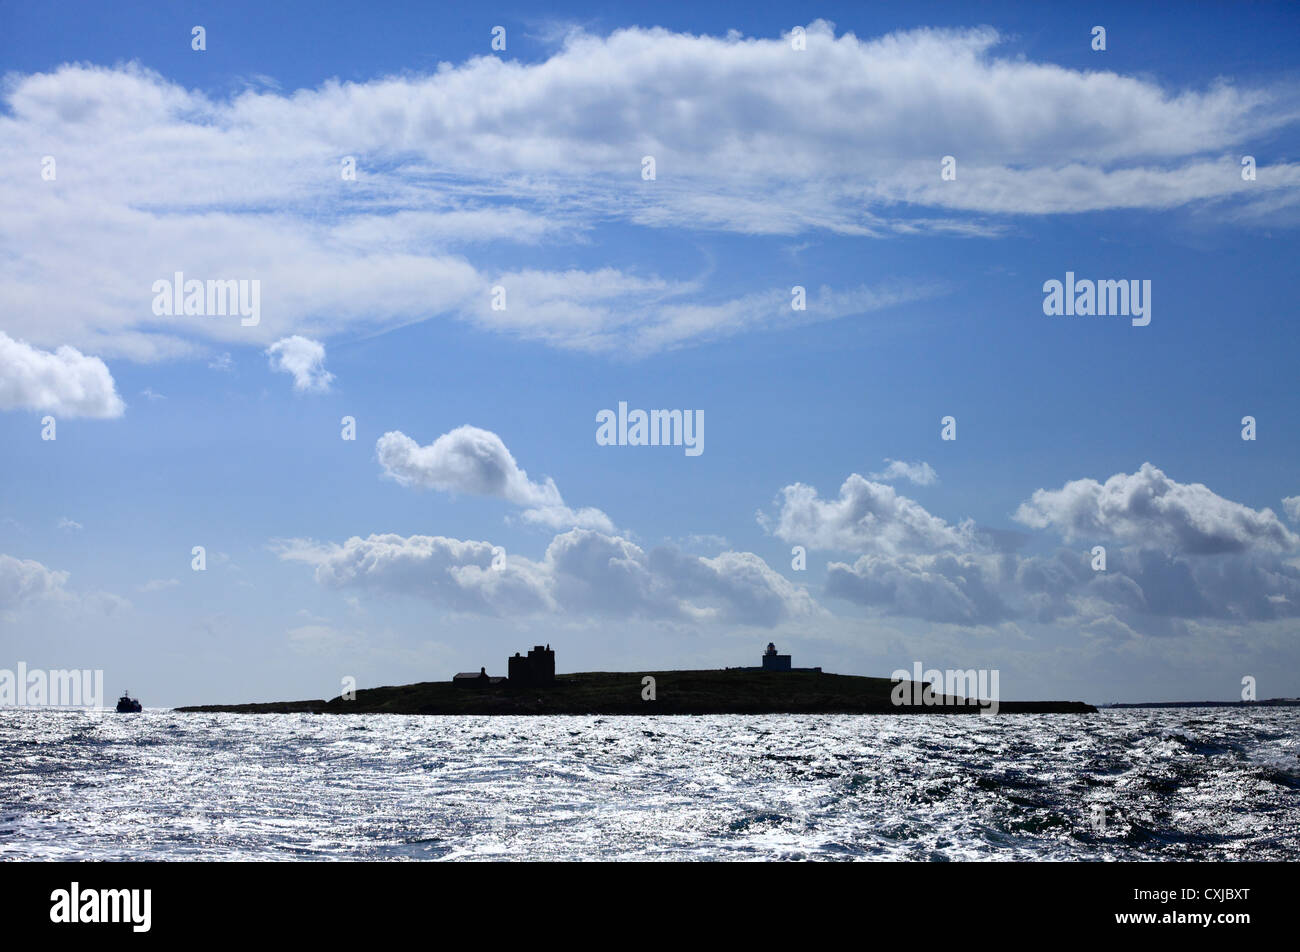 L'île de Farne intérieure avec un bateau autour de l'île. Banque D'Images